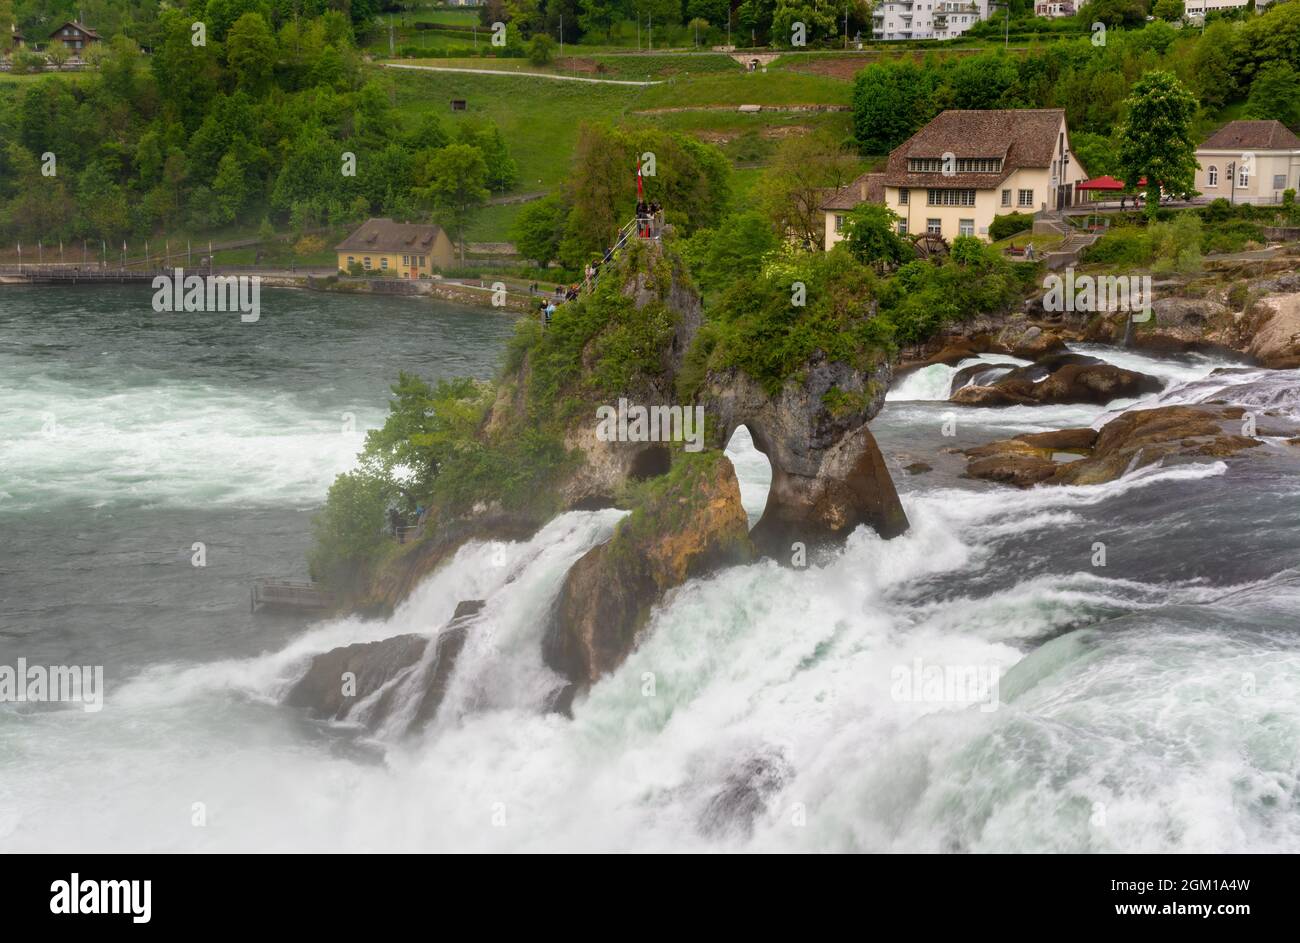 Schöner Blick auf die Rheinfälle an einem bewölkten Tag. Der größte Wasserfall Europas in Schaffhausen, Schweiz. Stockfoto